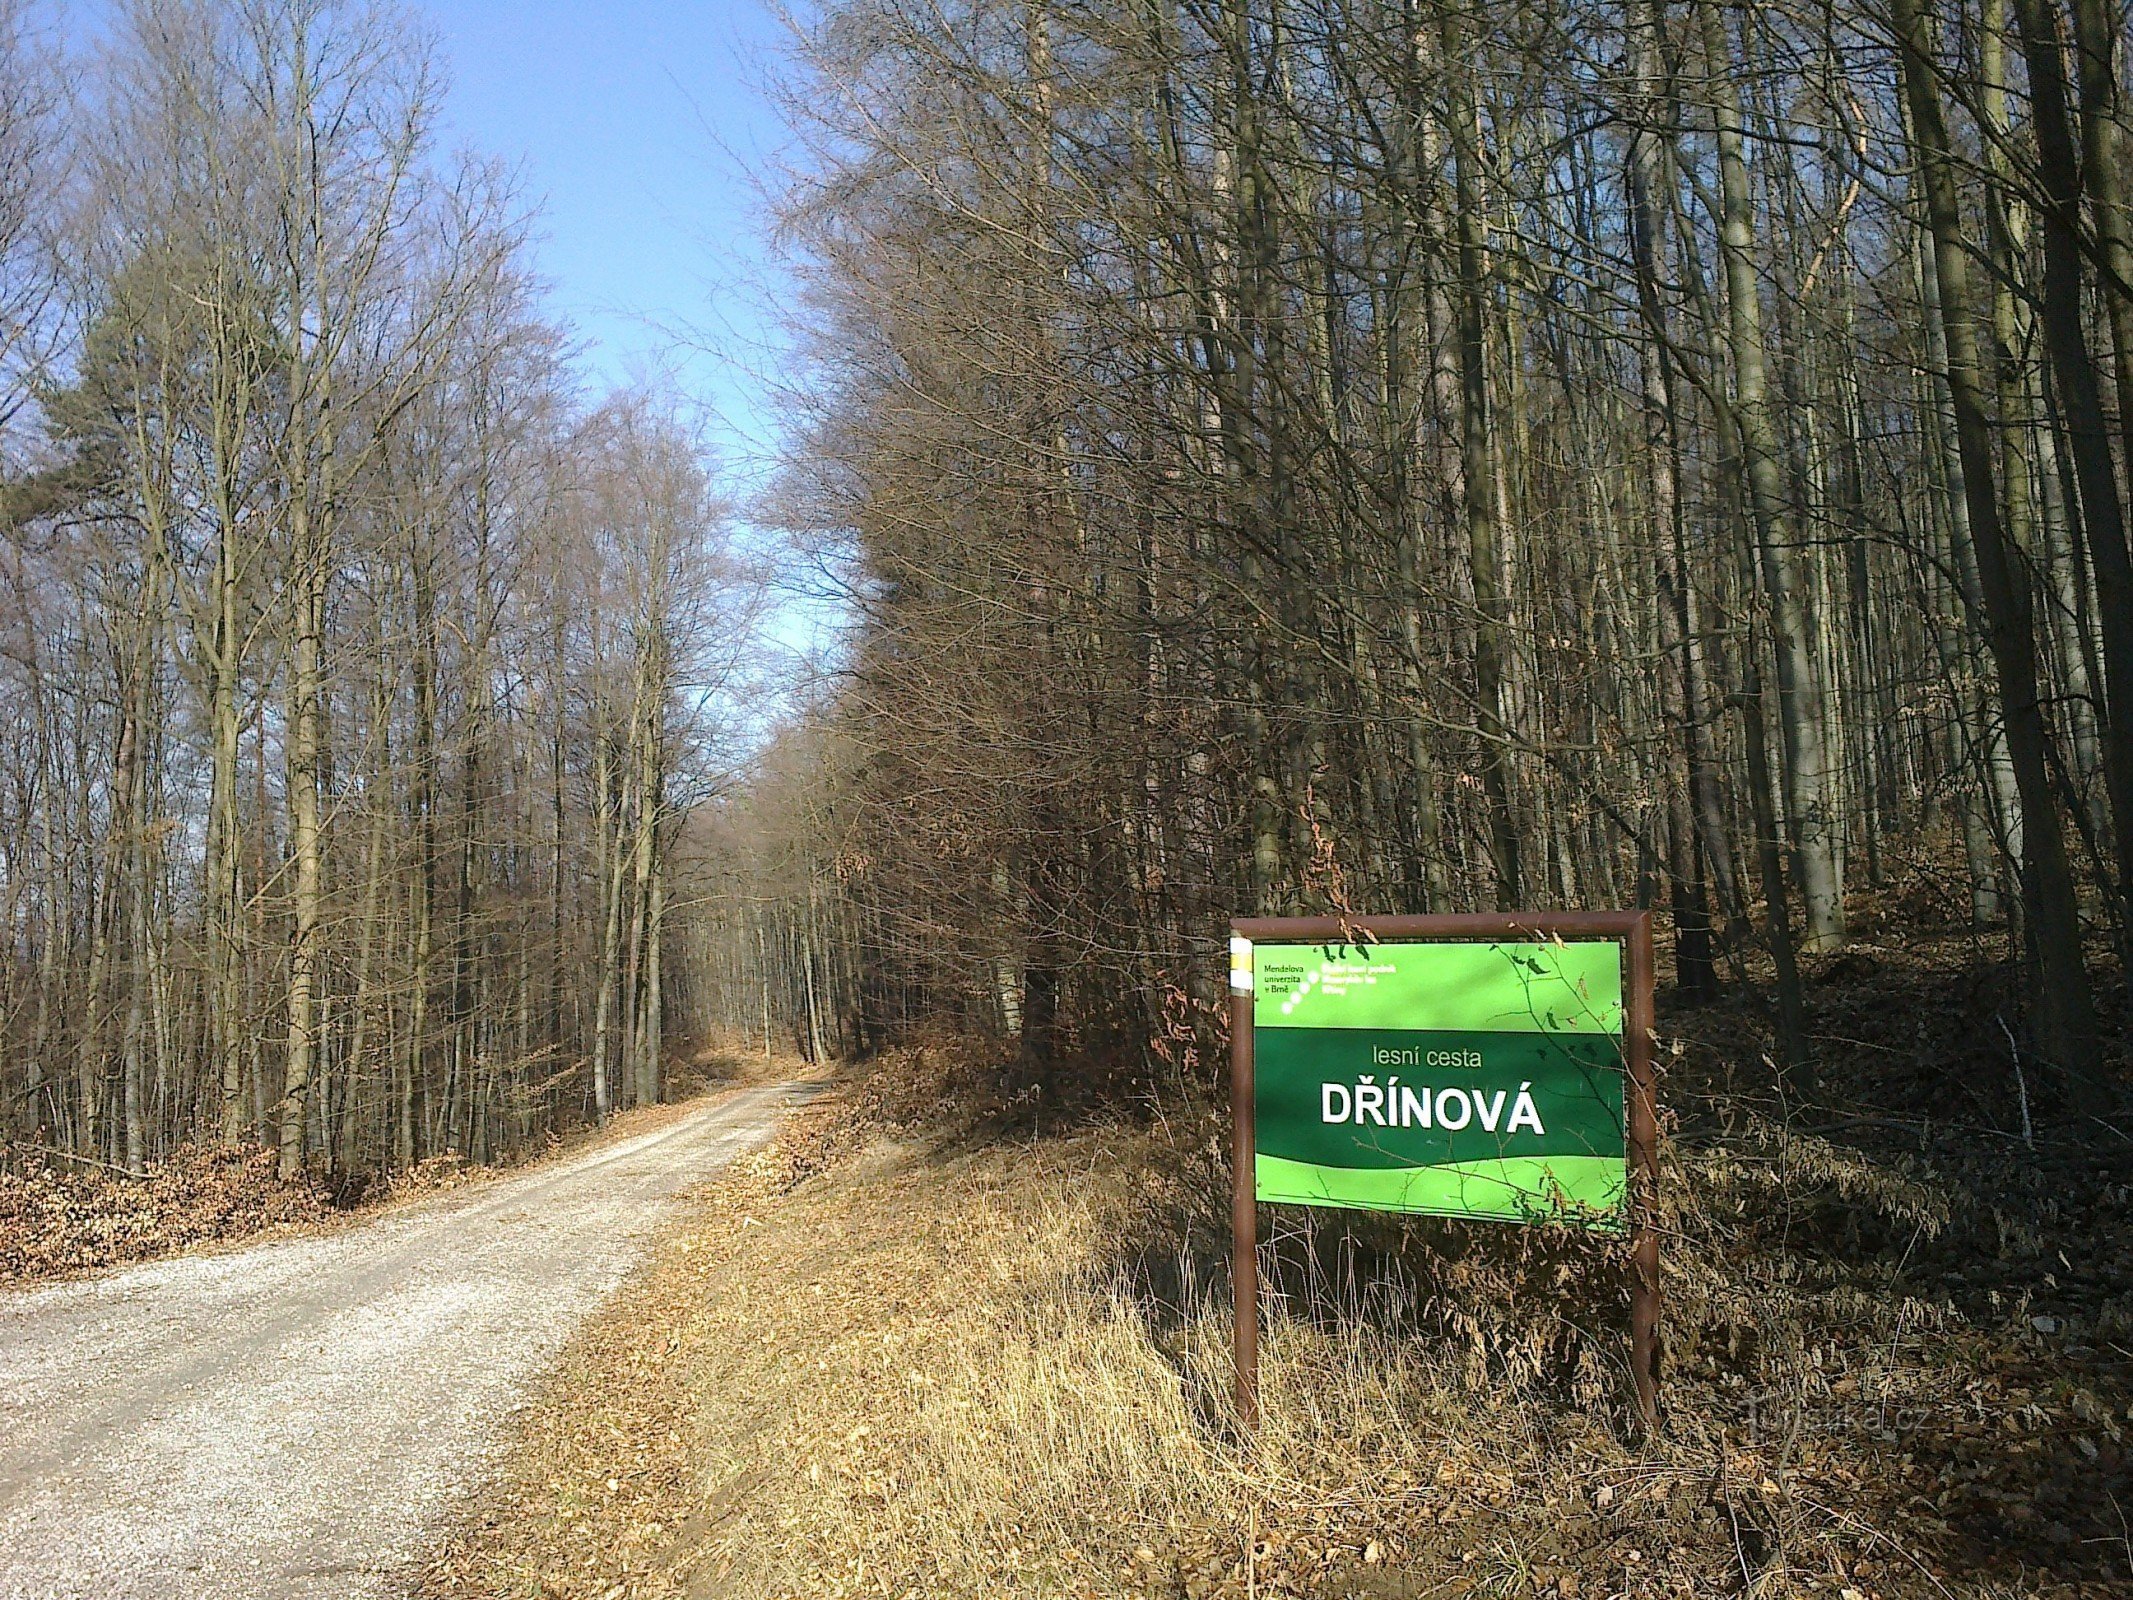 クシチニの学校と森林企業の林道システム